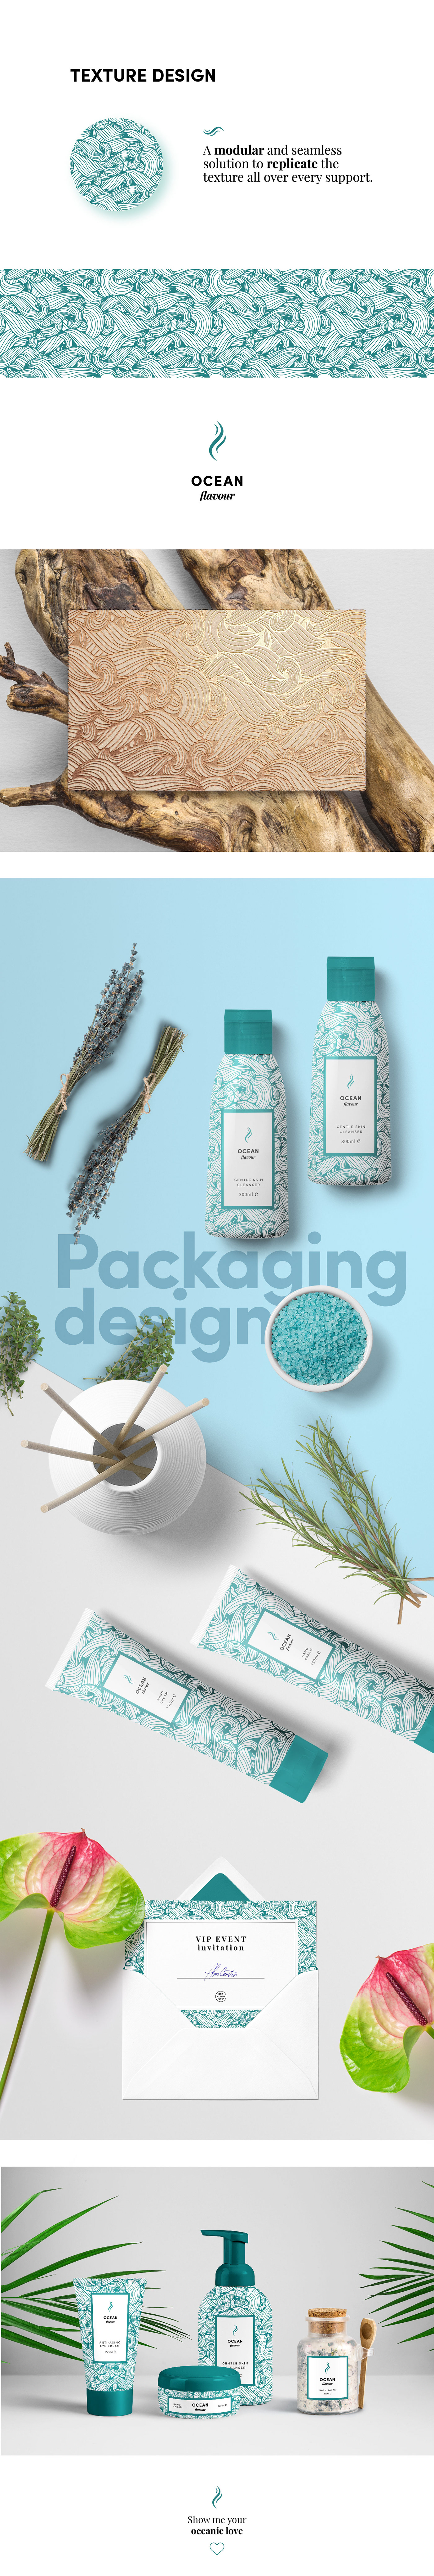 ludovico pincini branding  design graphic design  Packaging italian design texture